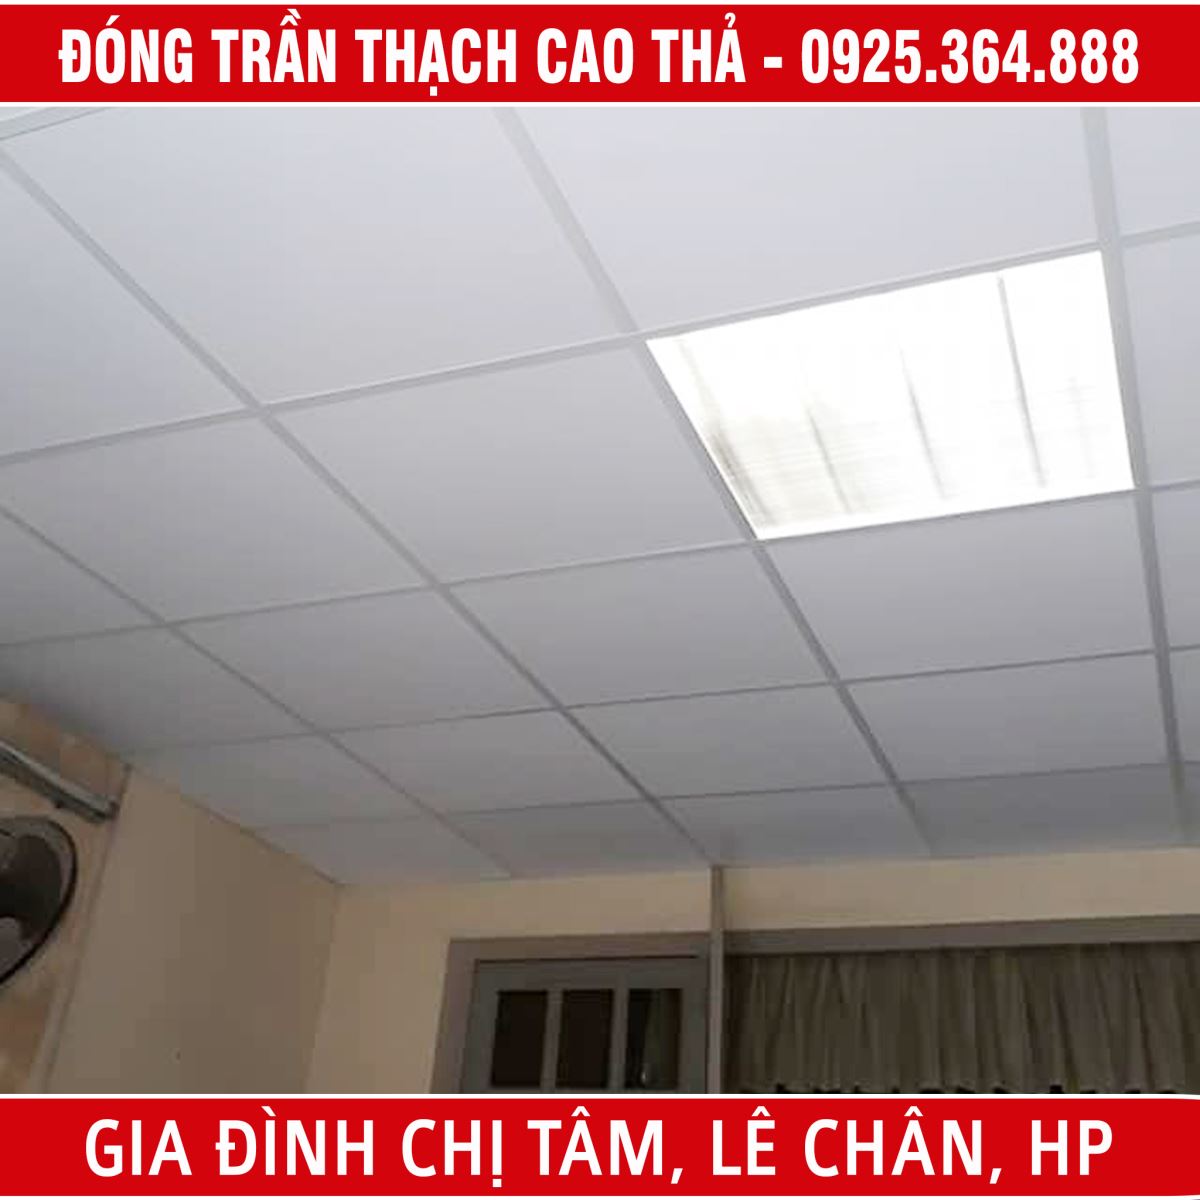 Thi công trần thạch cao thả tại nhà chị Tâm, Lê Chân, Hải Phòng